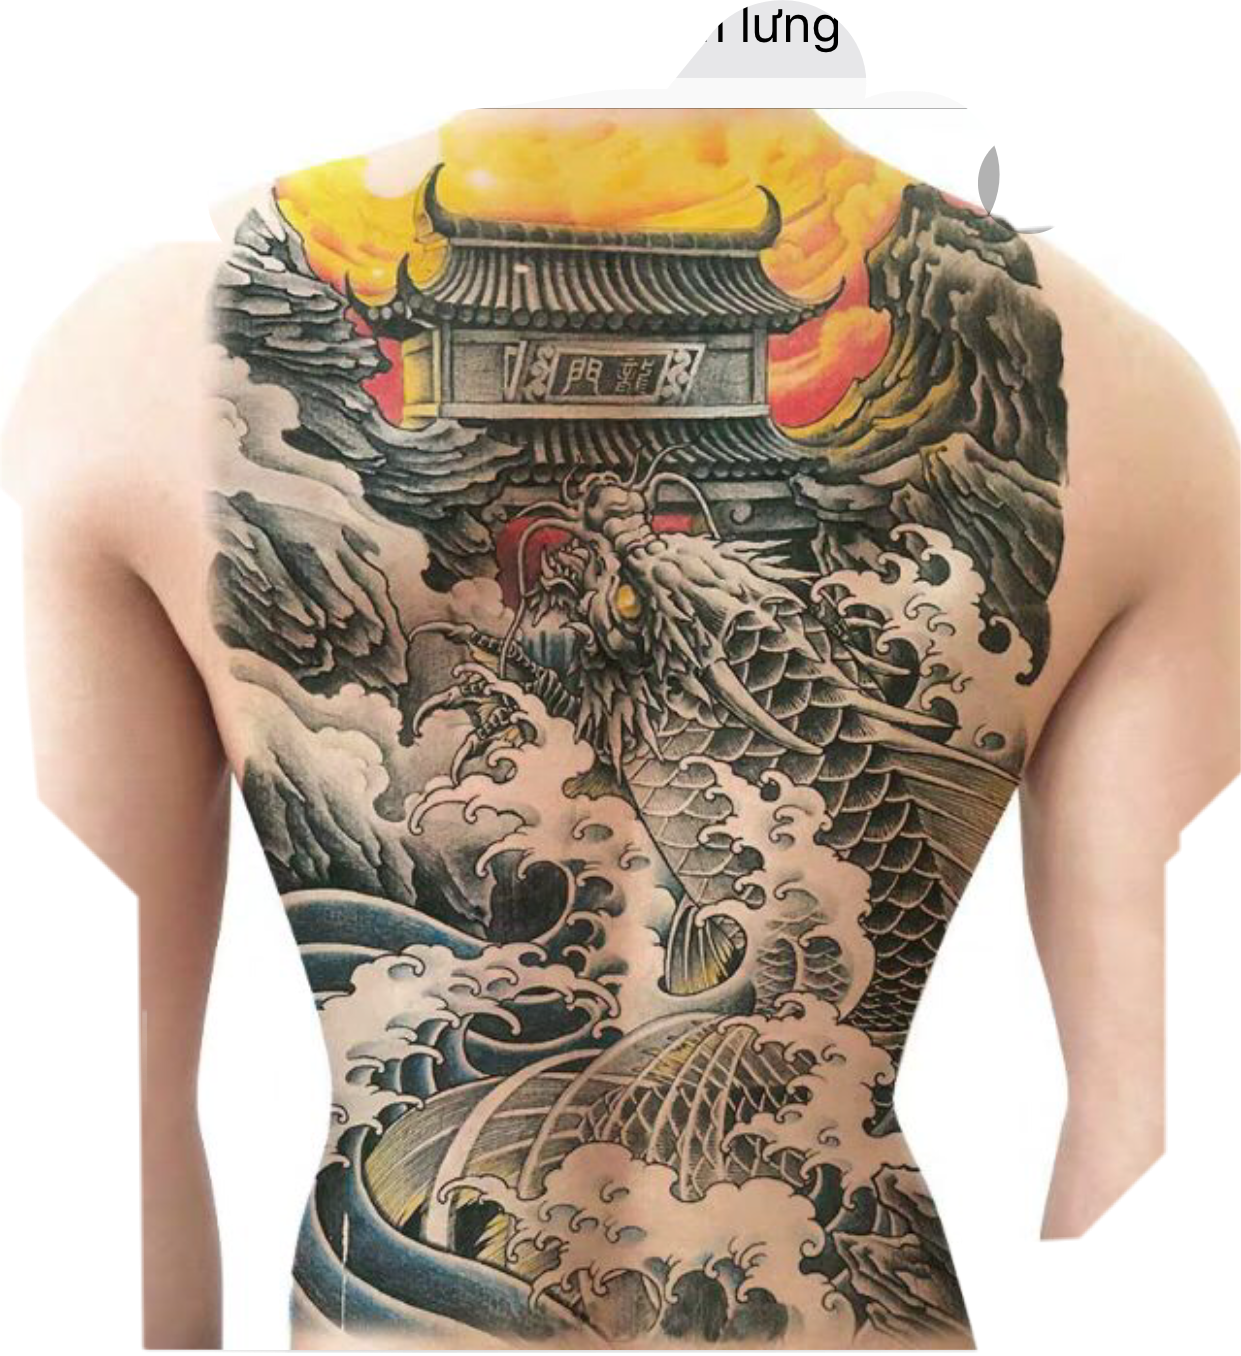 Picsart Tattoo Sleeve Tattoo Blackandgray Tattoo Artist Editing  Editing Black And White Tattoo Clip Art Tattoo Sleeve Tattoo png   PNGWing